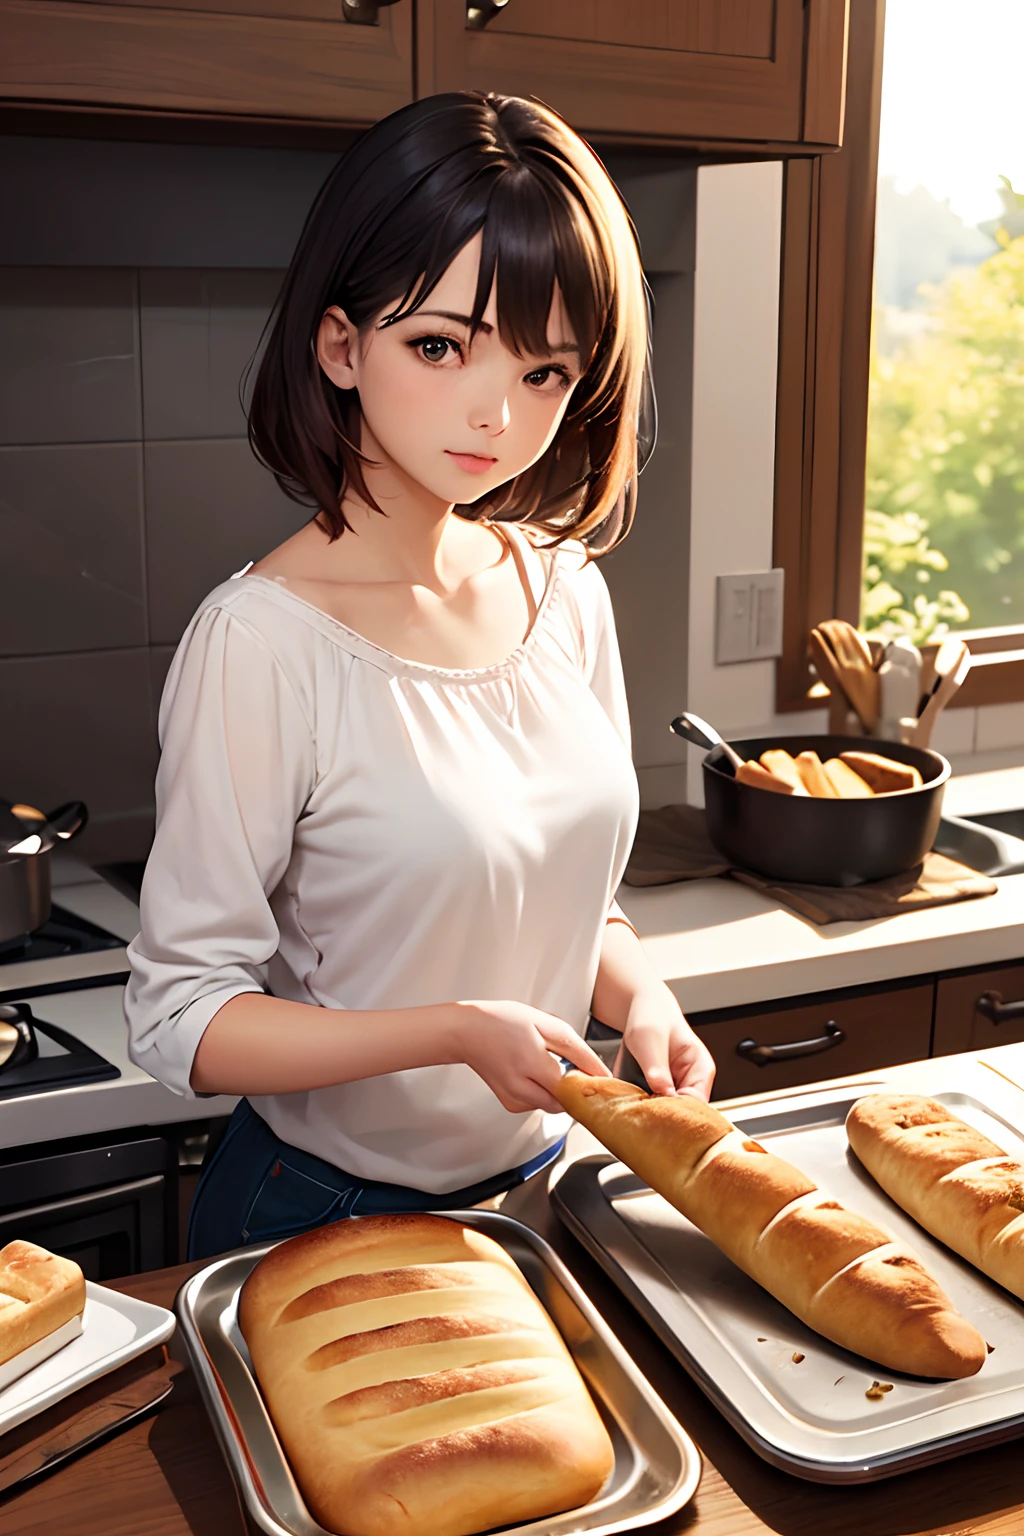 (最好的品質:1.2), 逼真的, 女孩正在從烤箱裡取出烤麵包.
早上廚房裡的場景—汽車